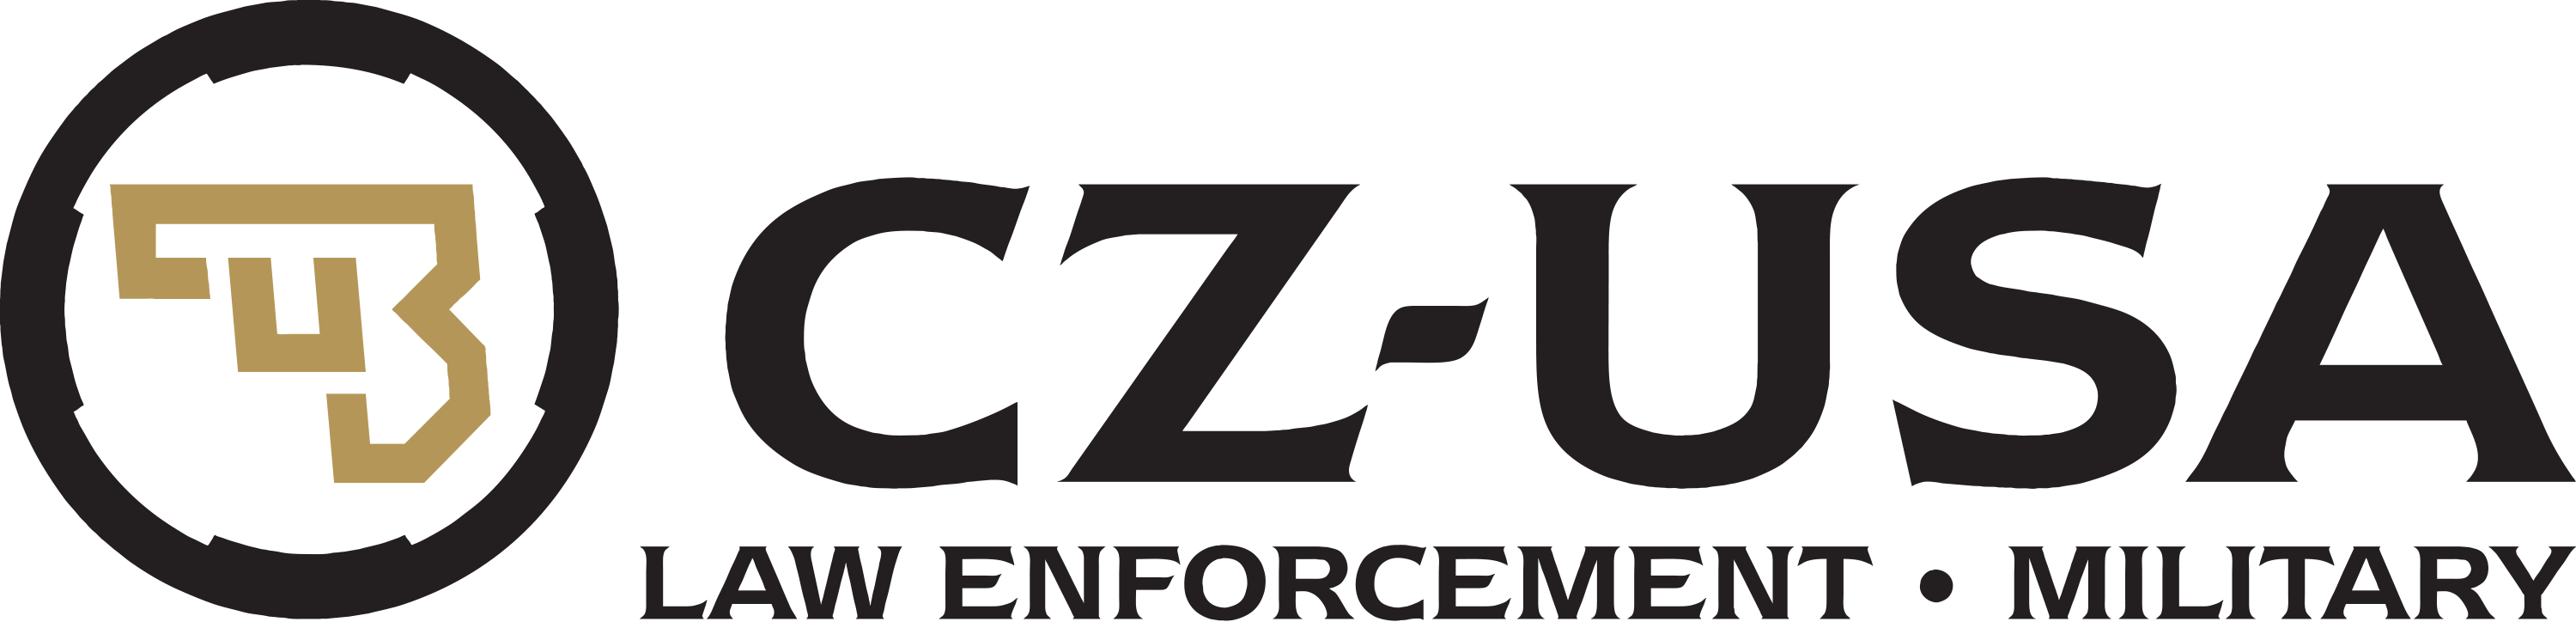 CZ Logo - CZ-USA LE/MIL | CZ-USA Law Enforcement & Military Program